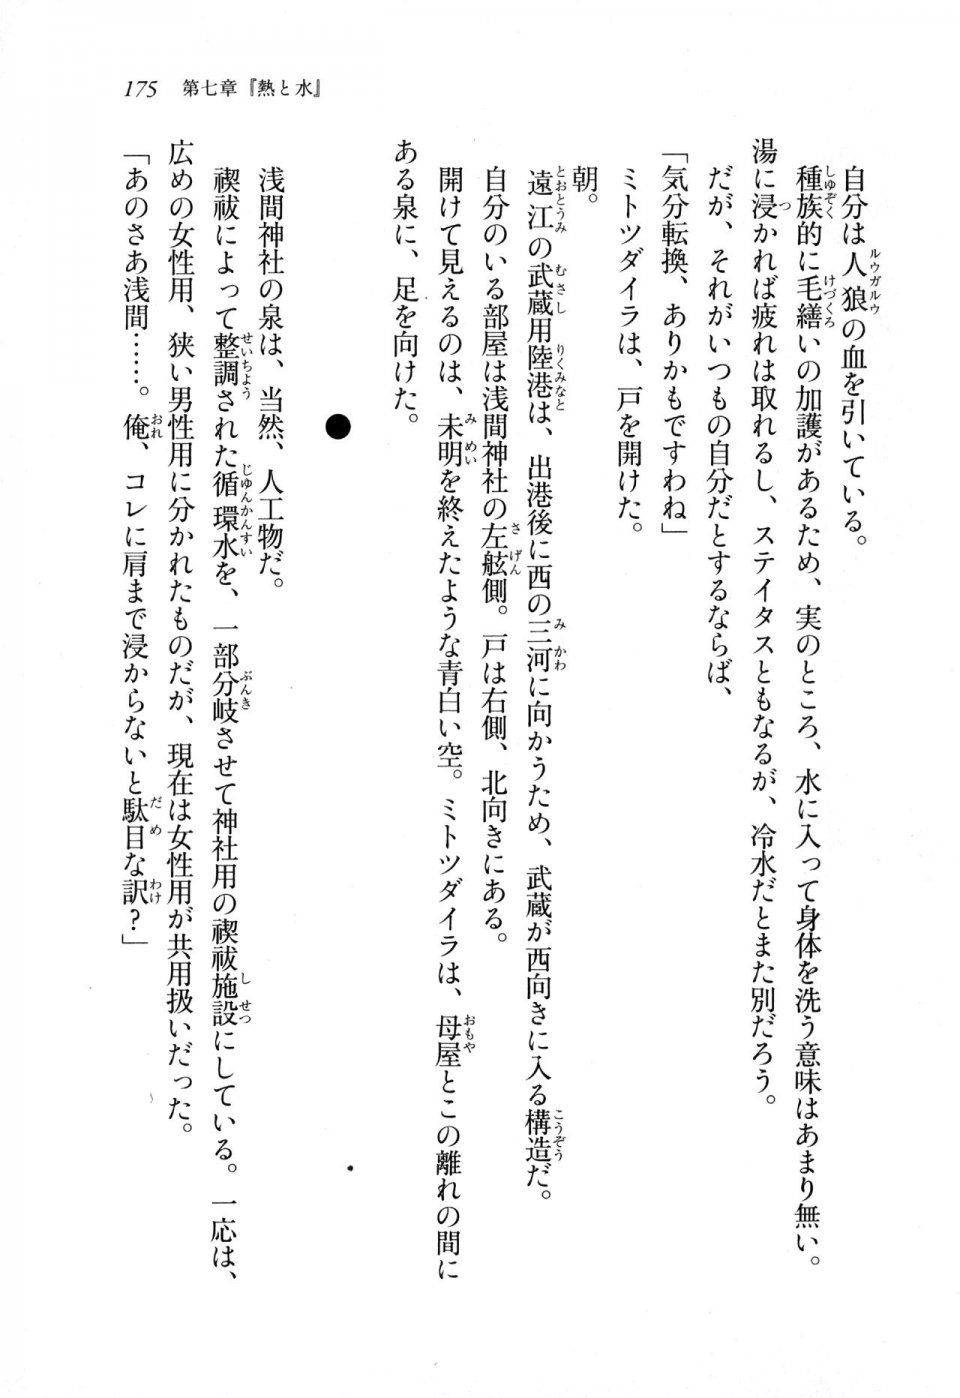 Kyoukai Senjou no Horizon LN Sidestory Vol 1 - Photo #173